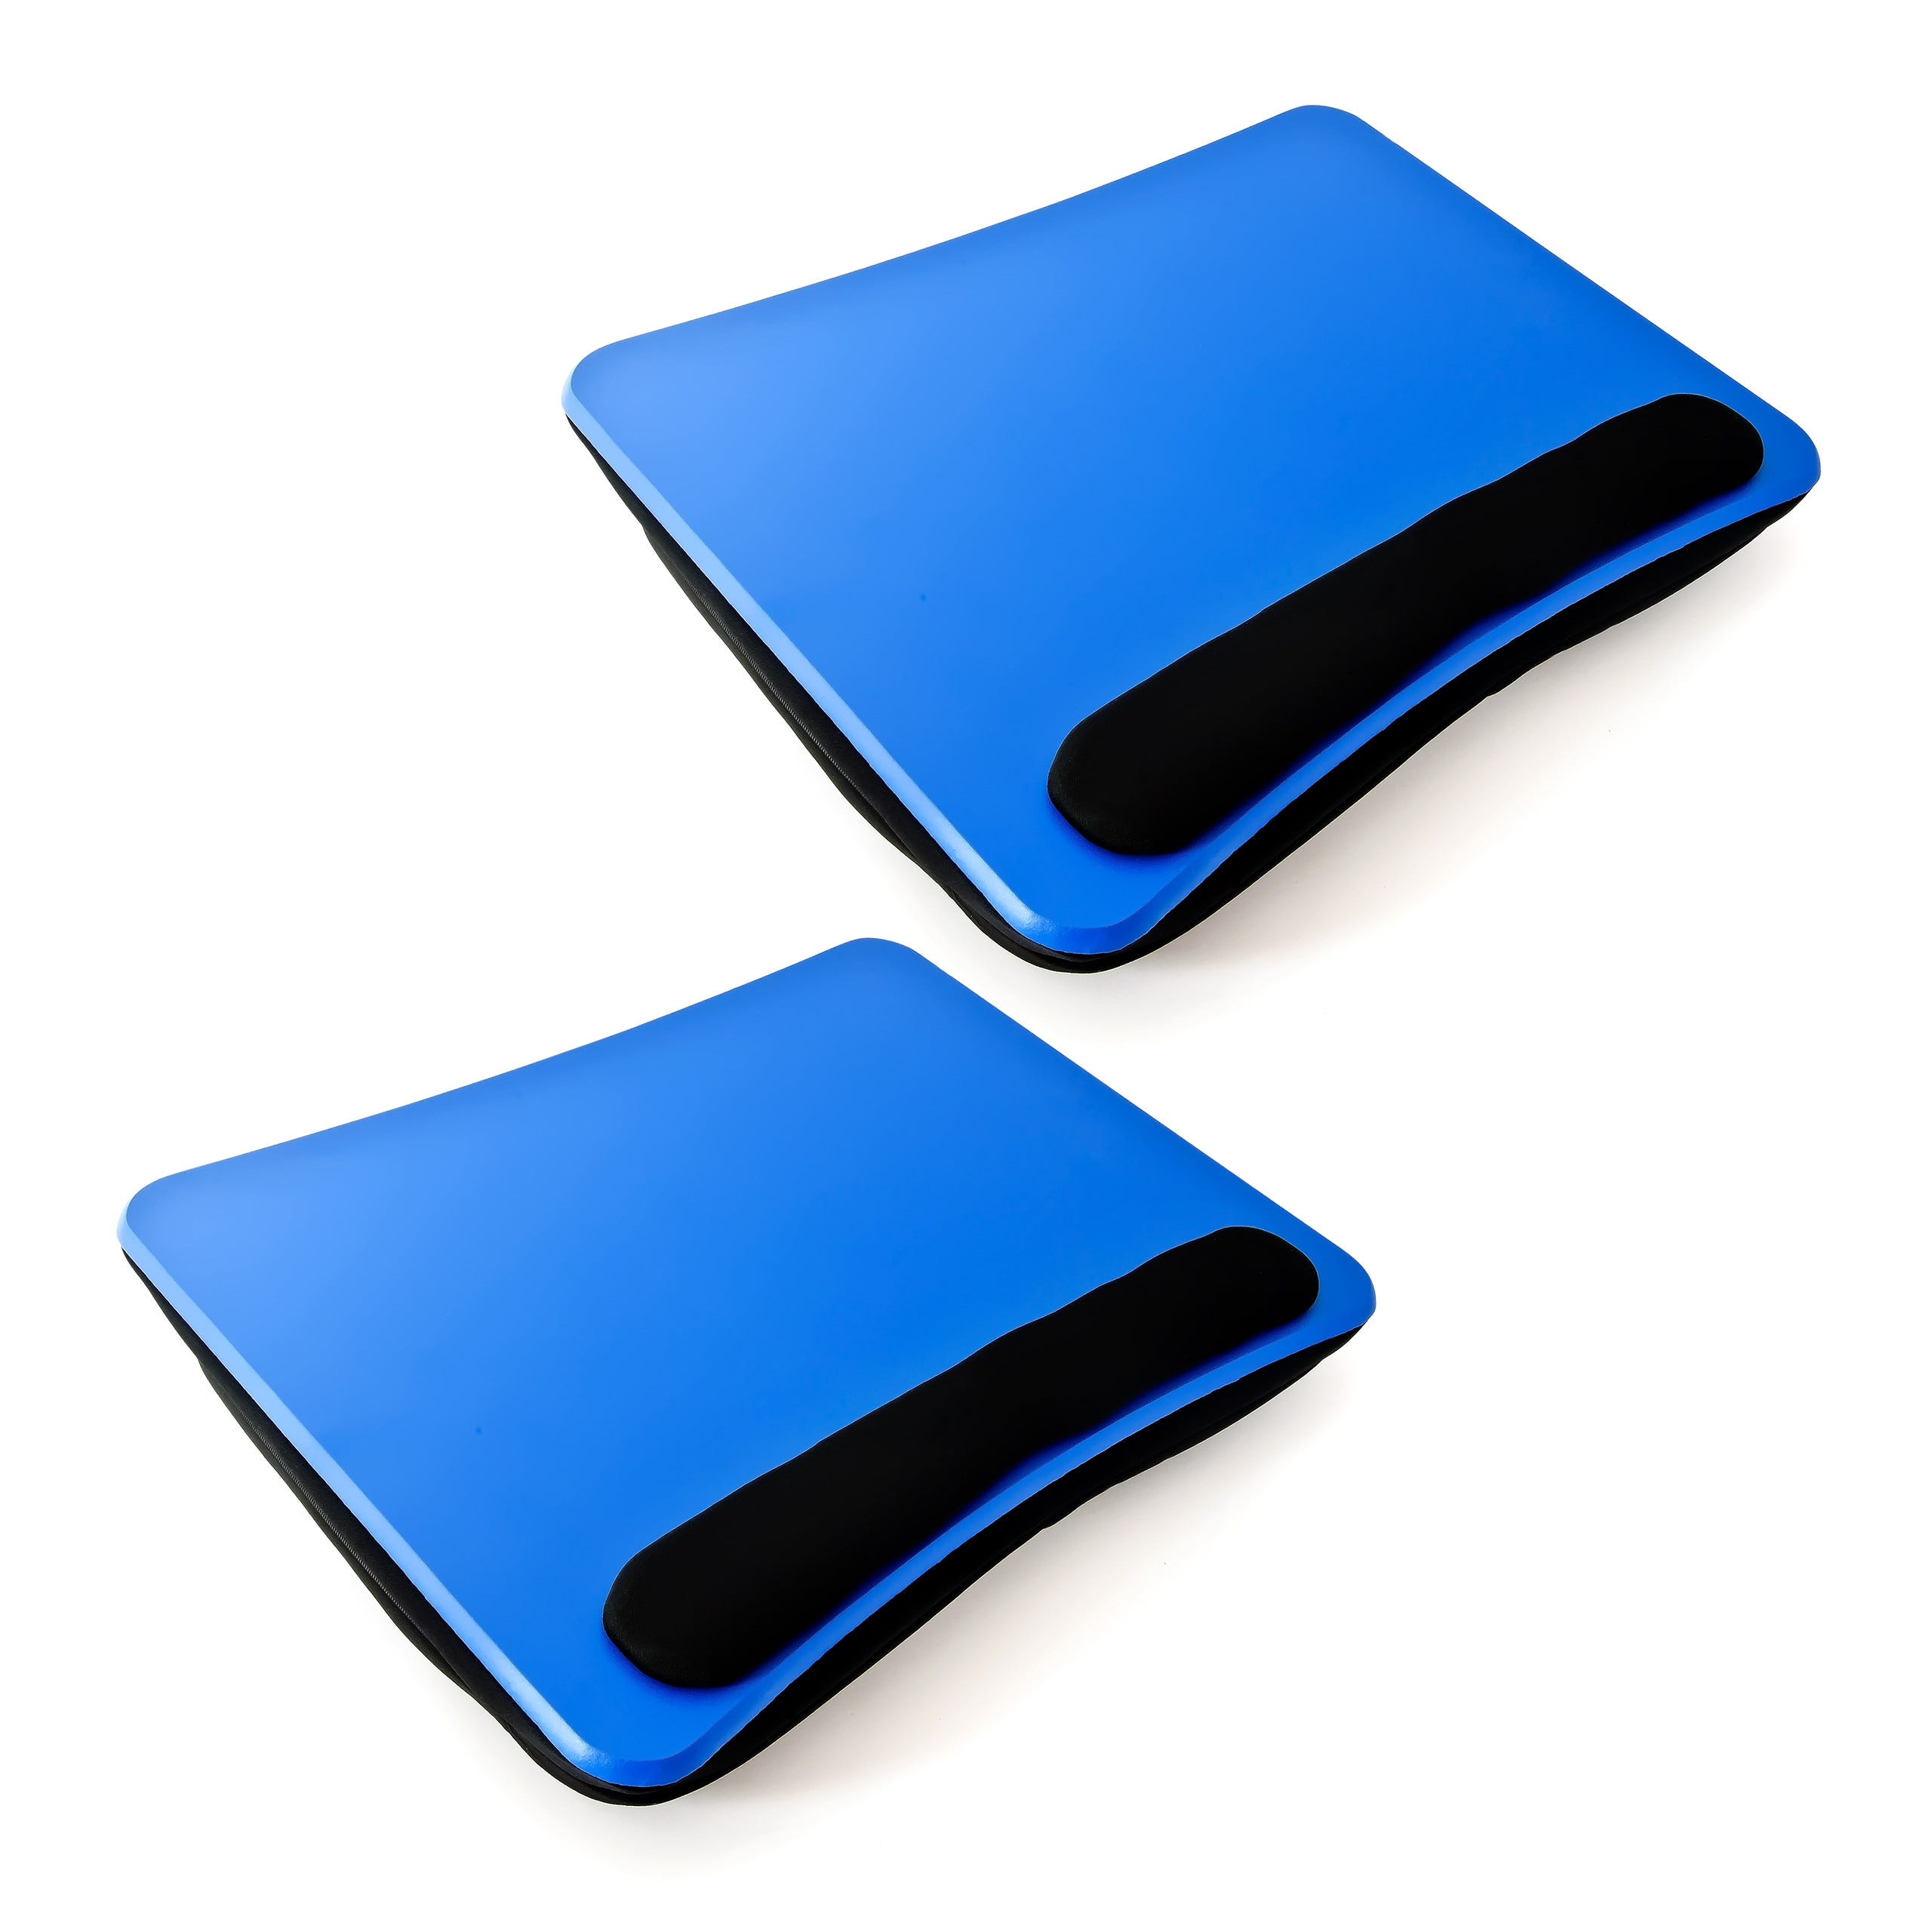 2x Support Genoux Ordinateur Portable Coussin ergonomique Amovible poignée  pour tablette 44 x 34 x 5 cm, bleu